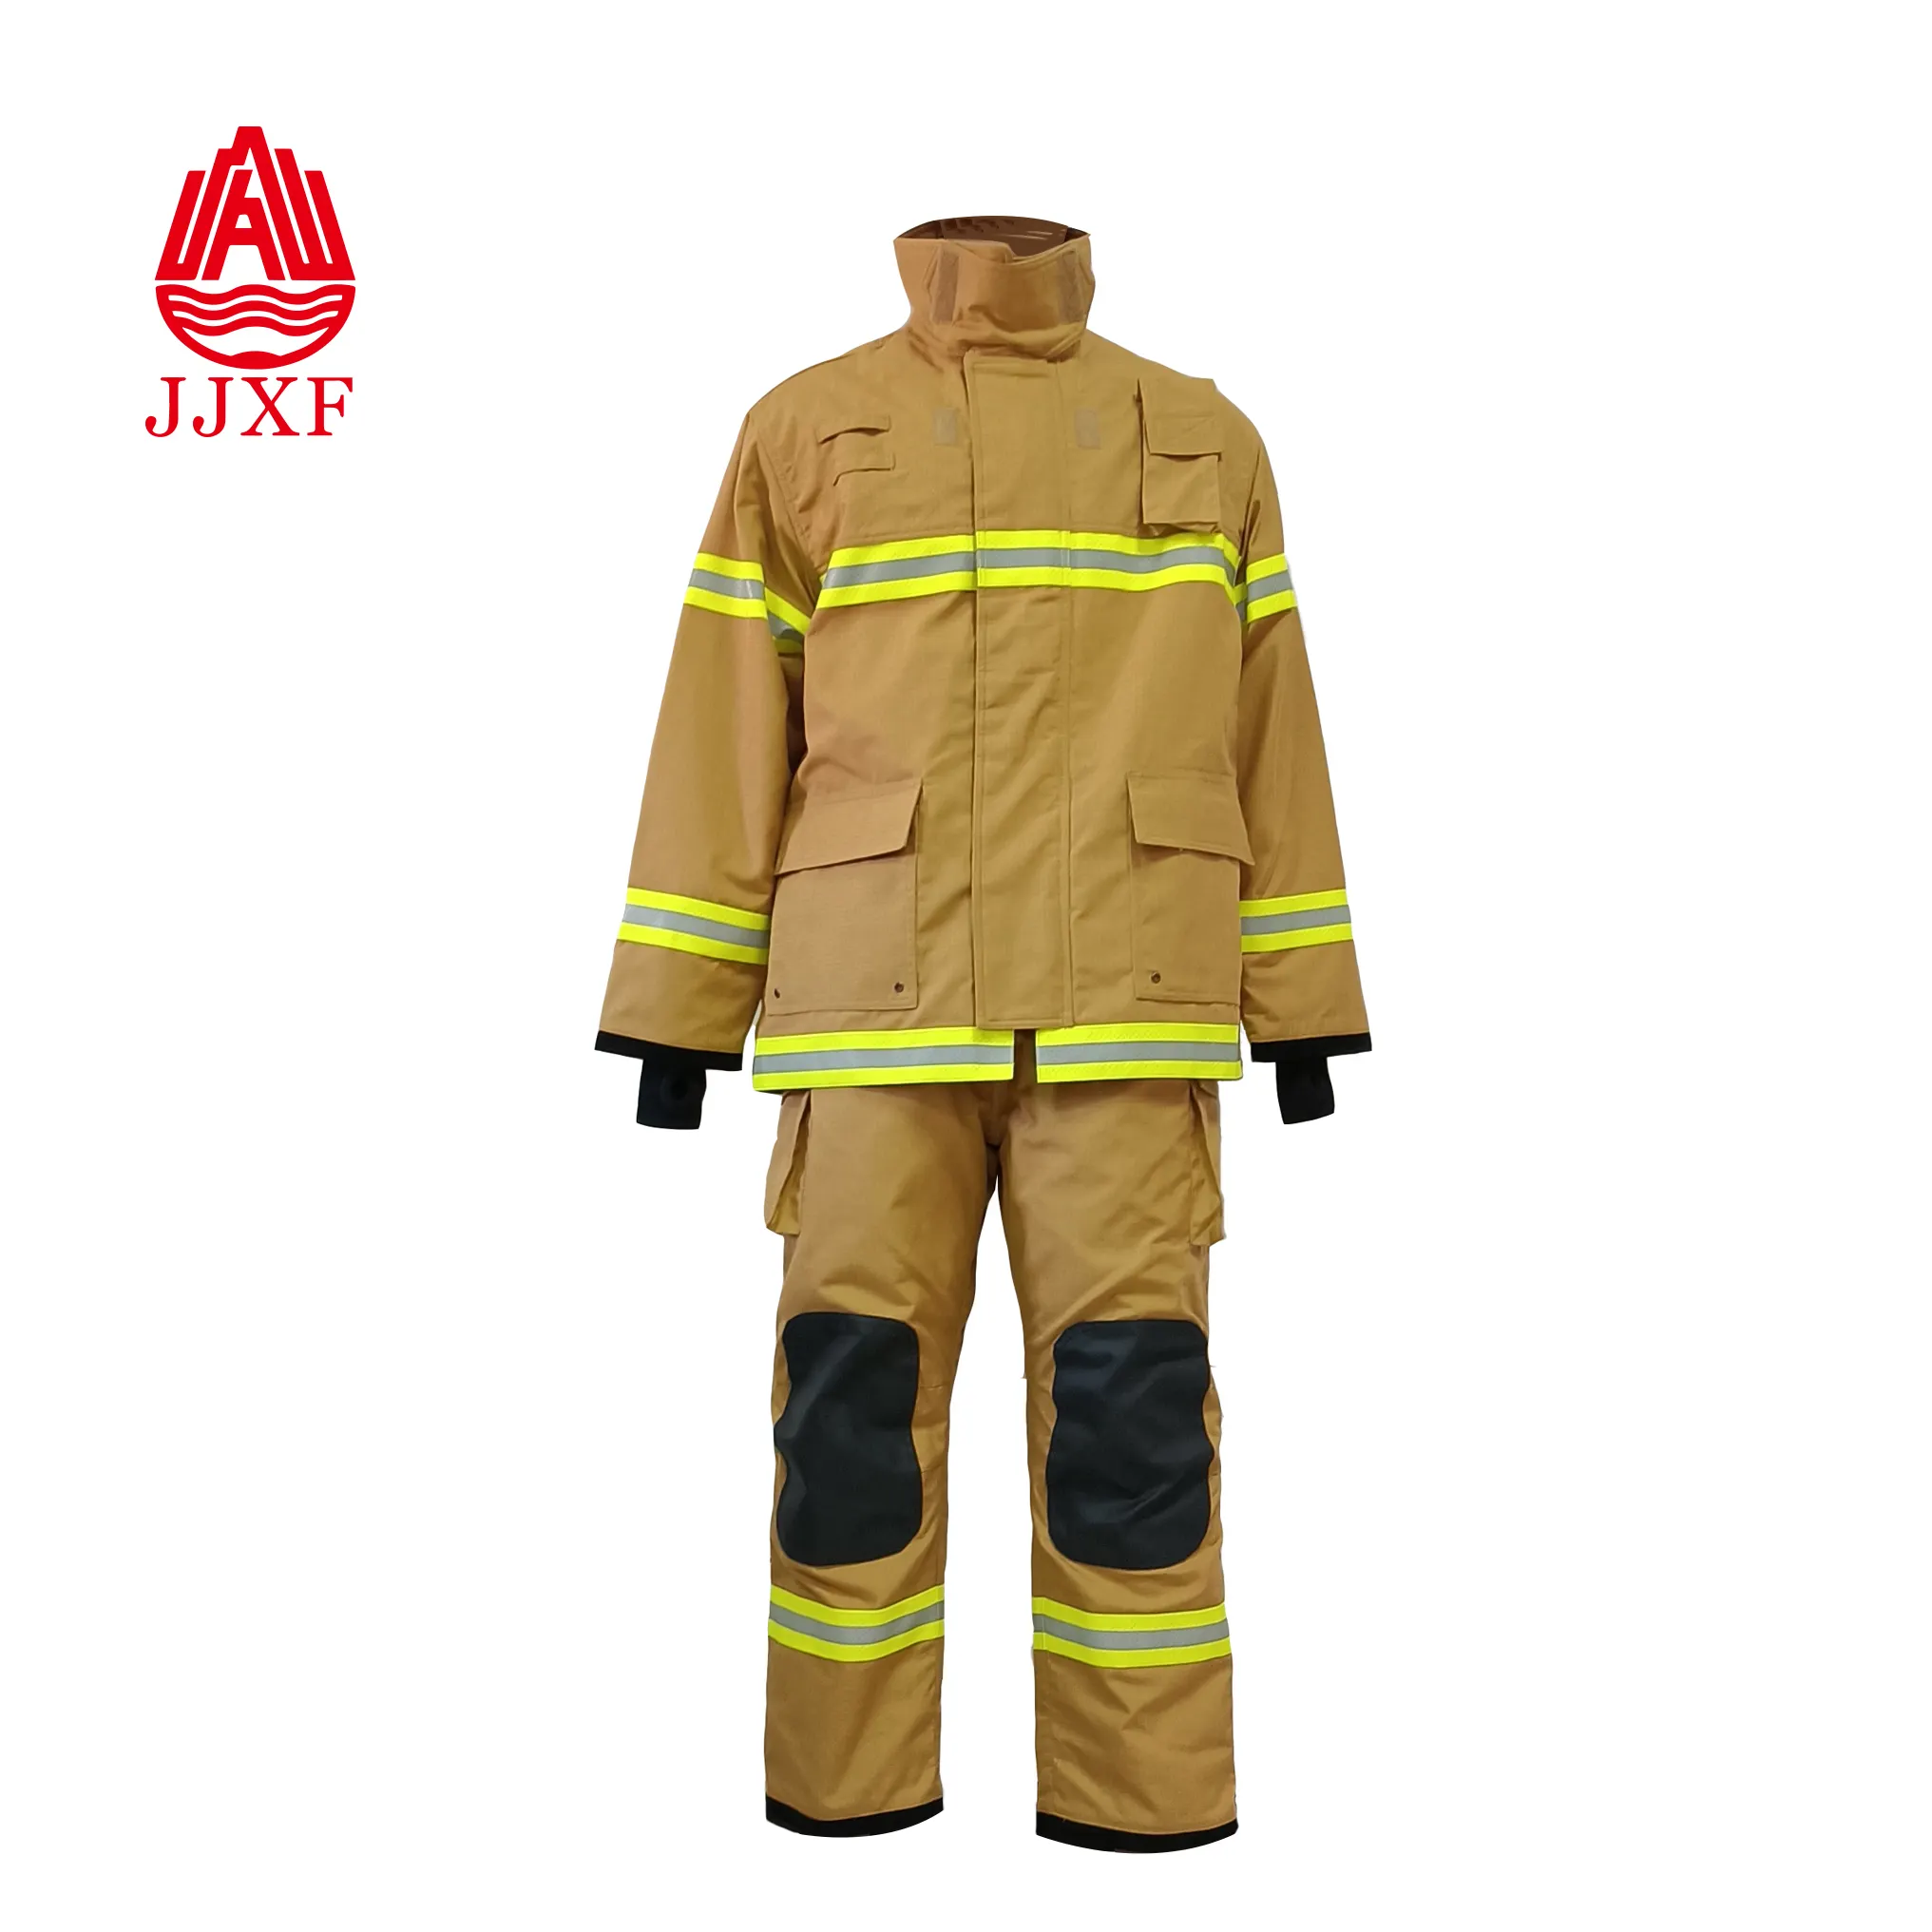 Complete Details about Nomex Fireman Jacket With En469 Standards jacket for Firefighter